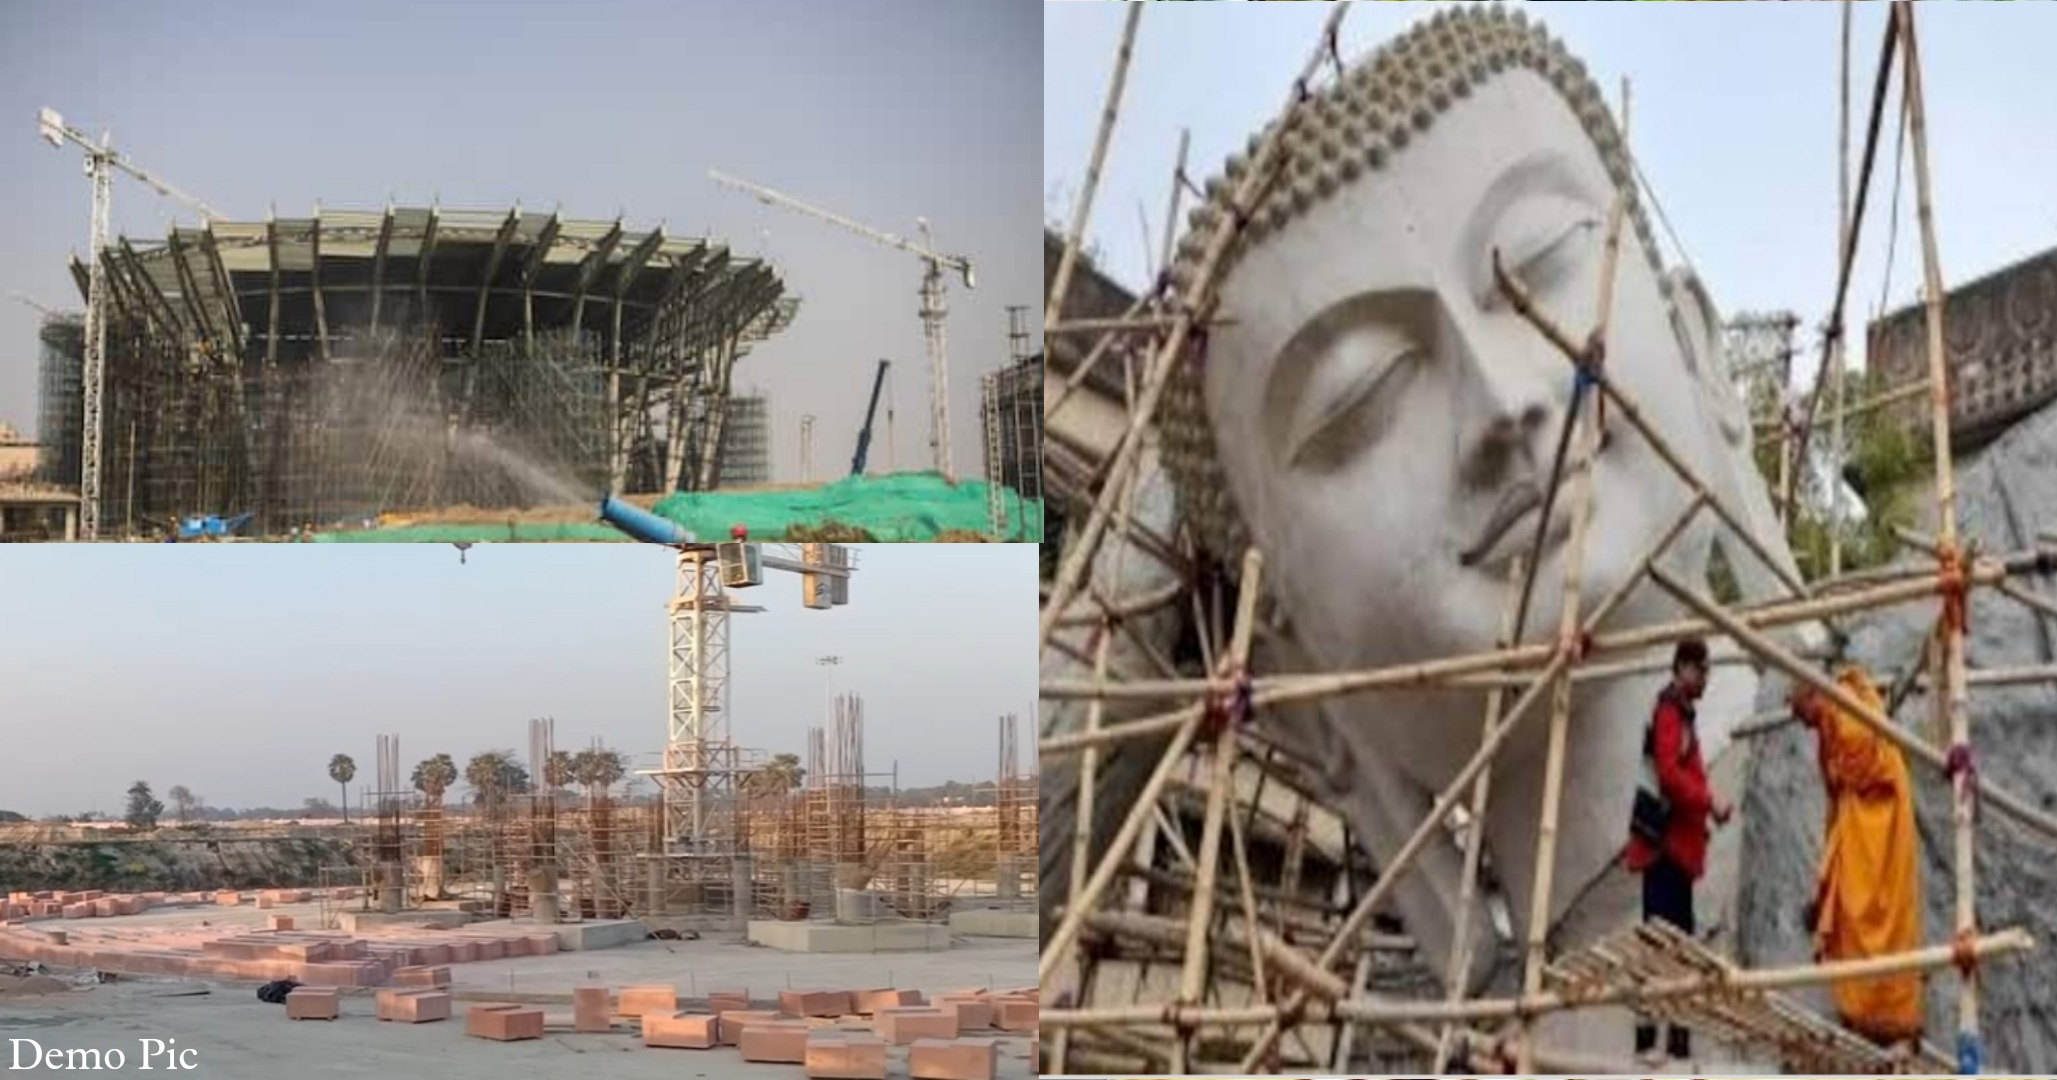 National Buddha Samyak Darshan Museum being built in Vaishali